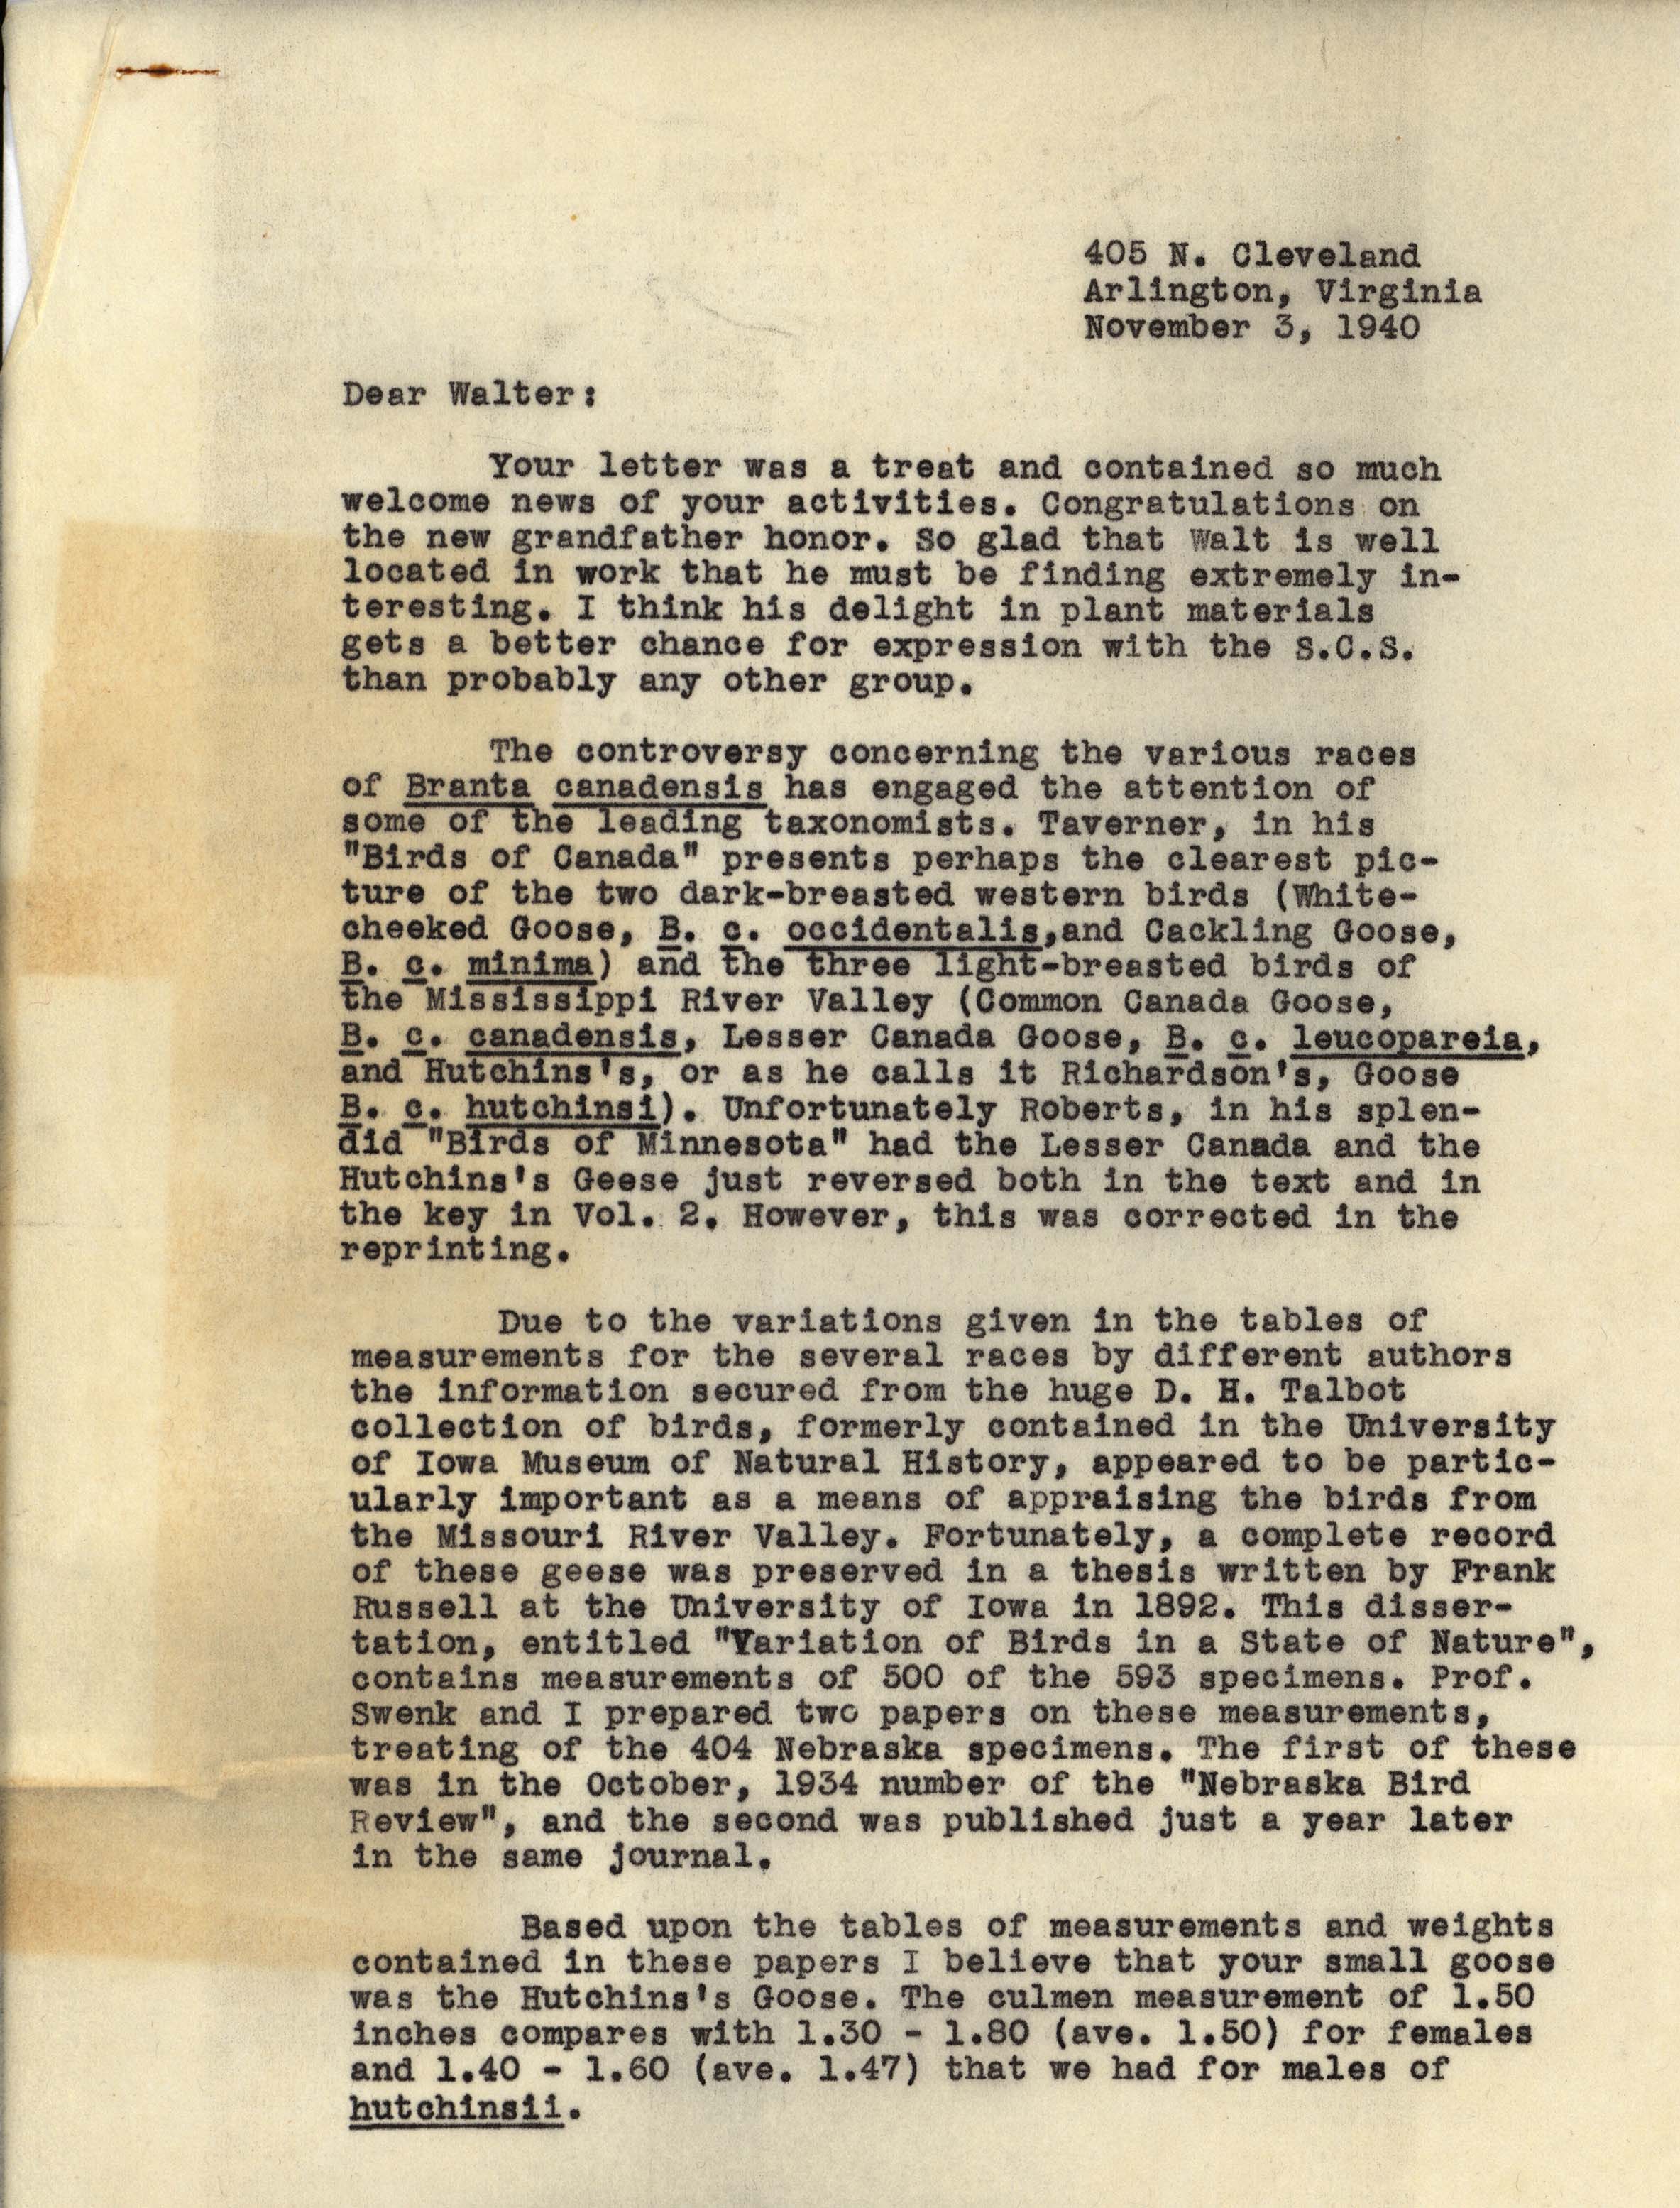 Philip DuMont letter to Walter Rosene regarding Goose measurements, November 3, 1940